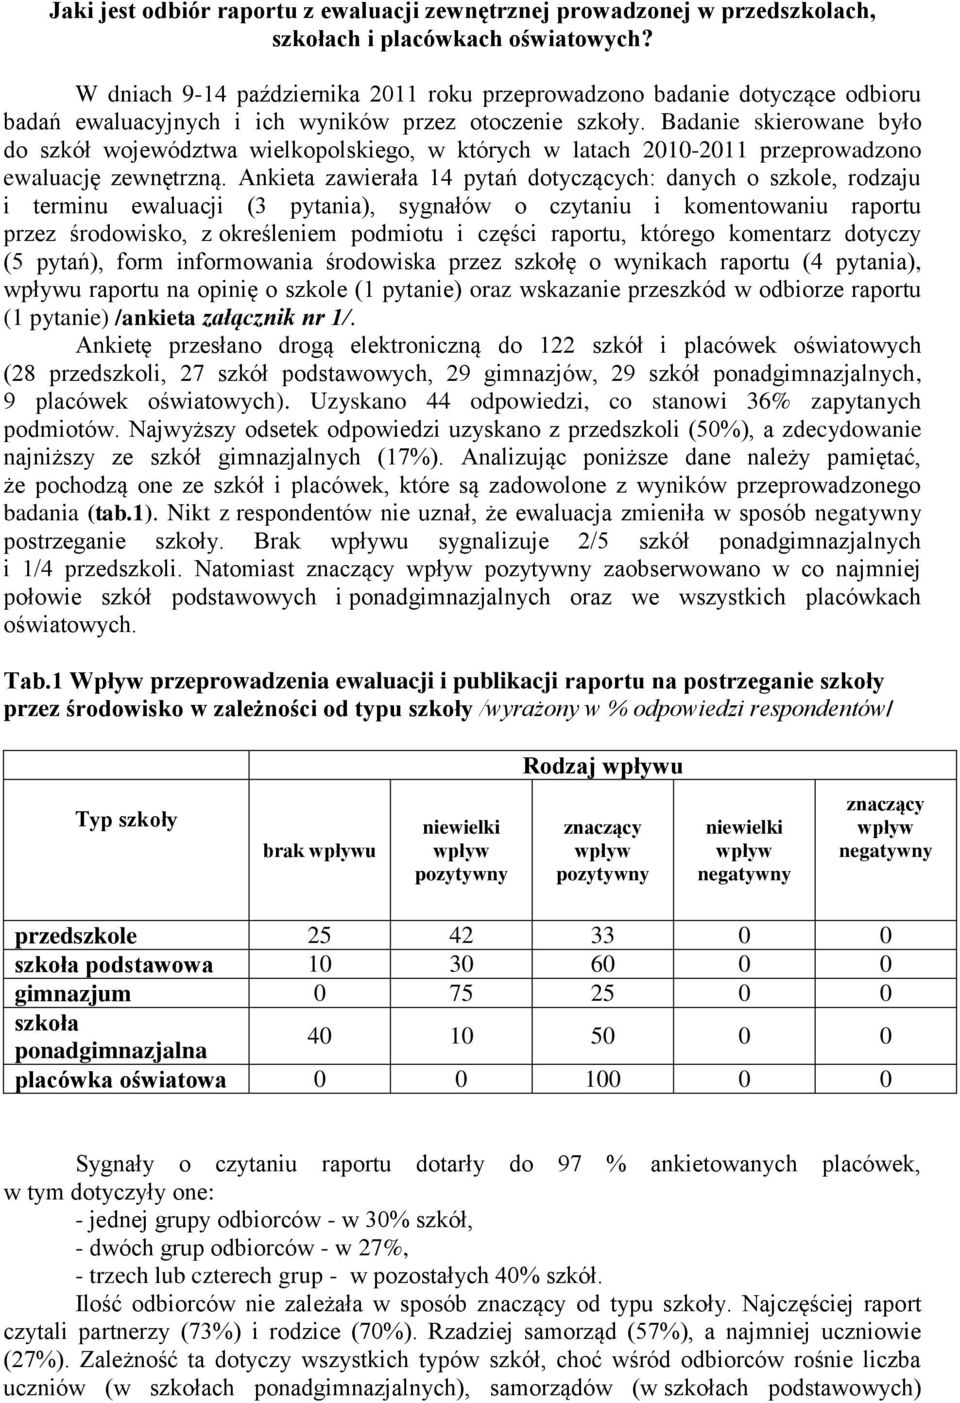 Badanie skierowane było do szkół województwa wielkopolskiego, w których w latach 2010-2011 przeprowadzono ewaluację zewnętrzną.